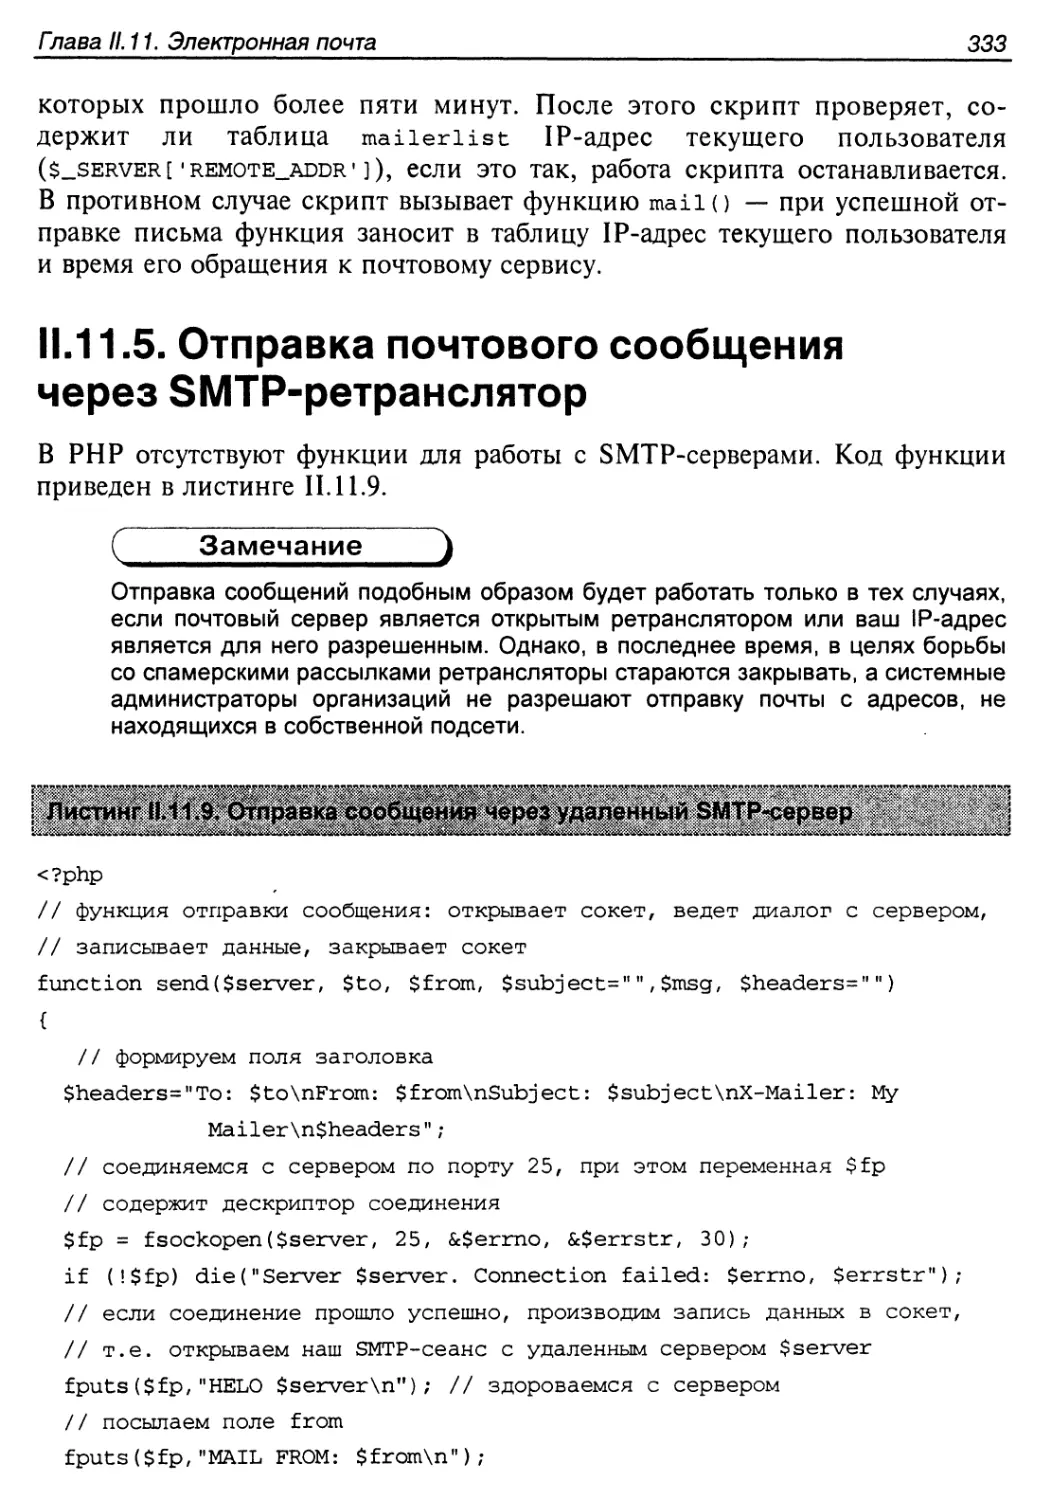 II. 11.5. Отправка почтового сообщения через SMTP-ретранслятор